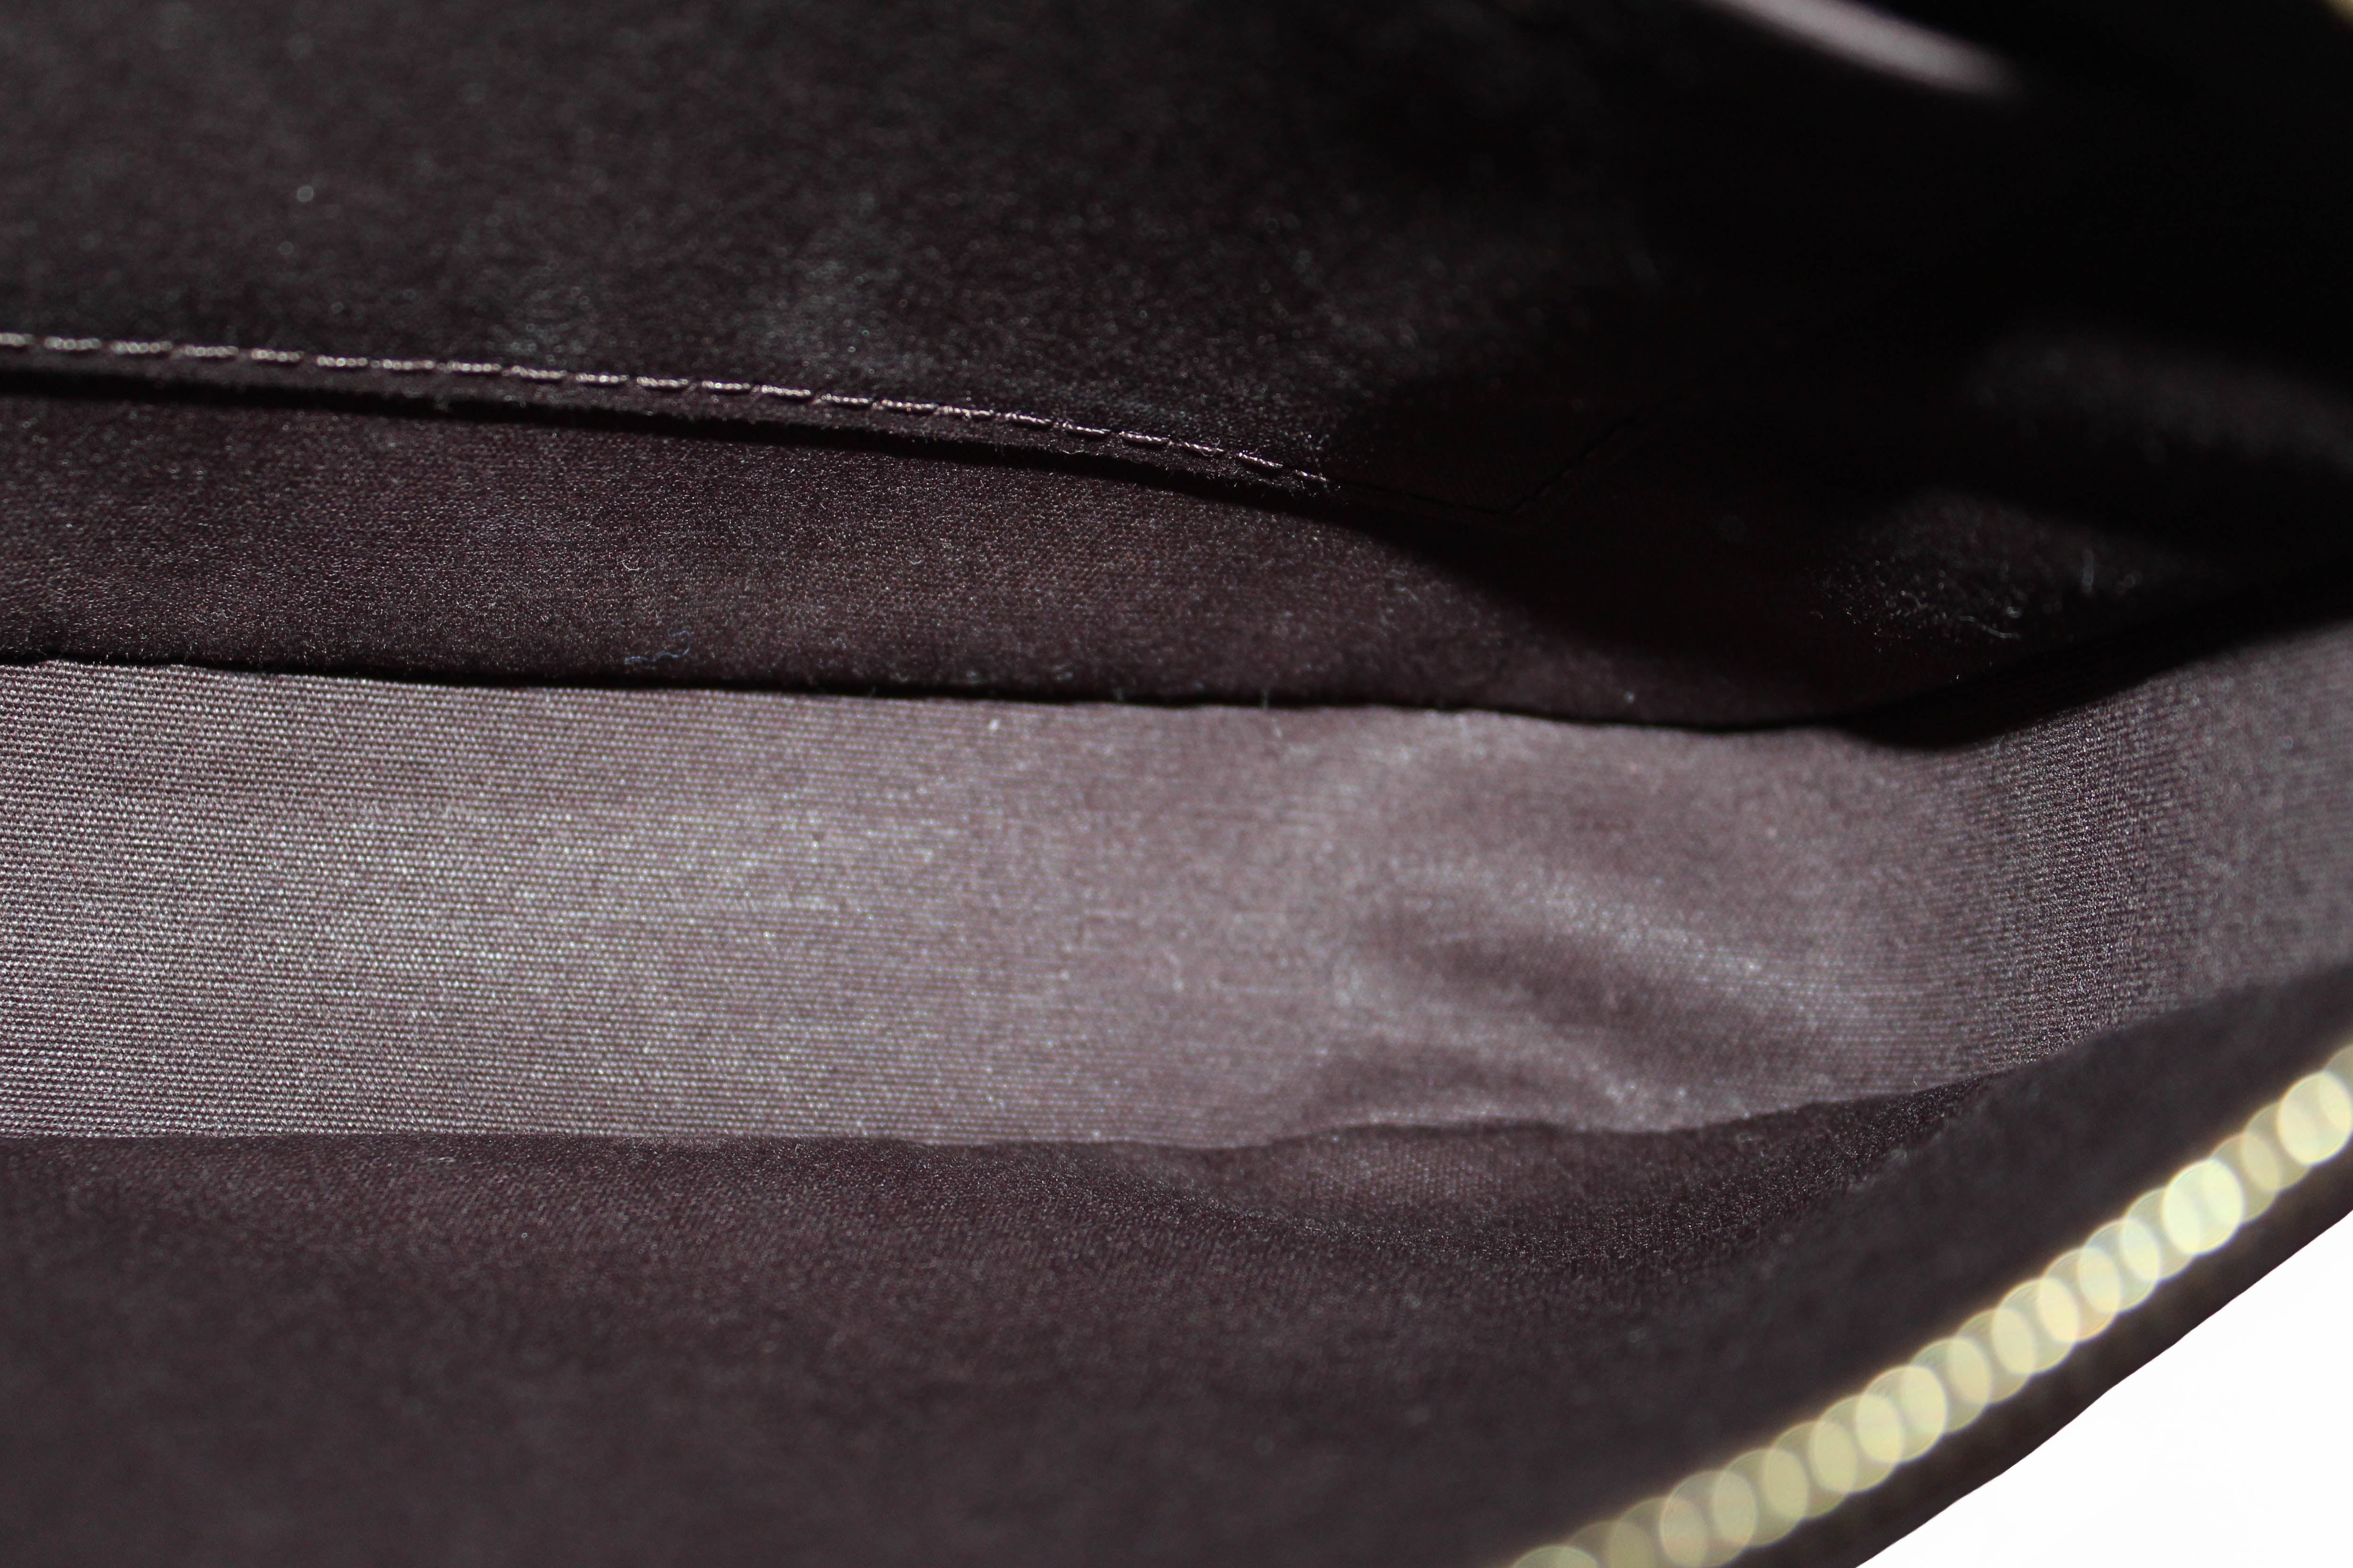 Authentic Louis Vuitton Amarante Monogram Vernis Leather Pochette Shoulder Bag